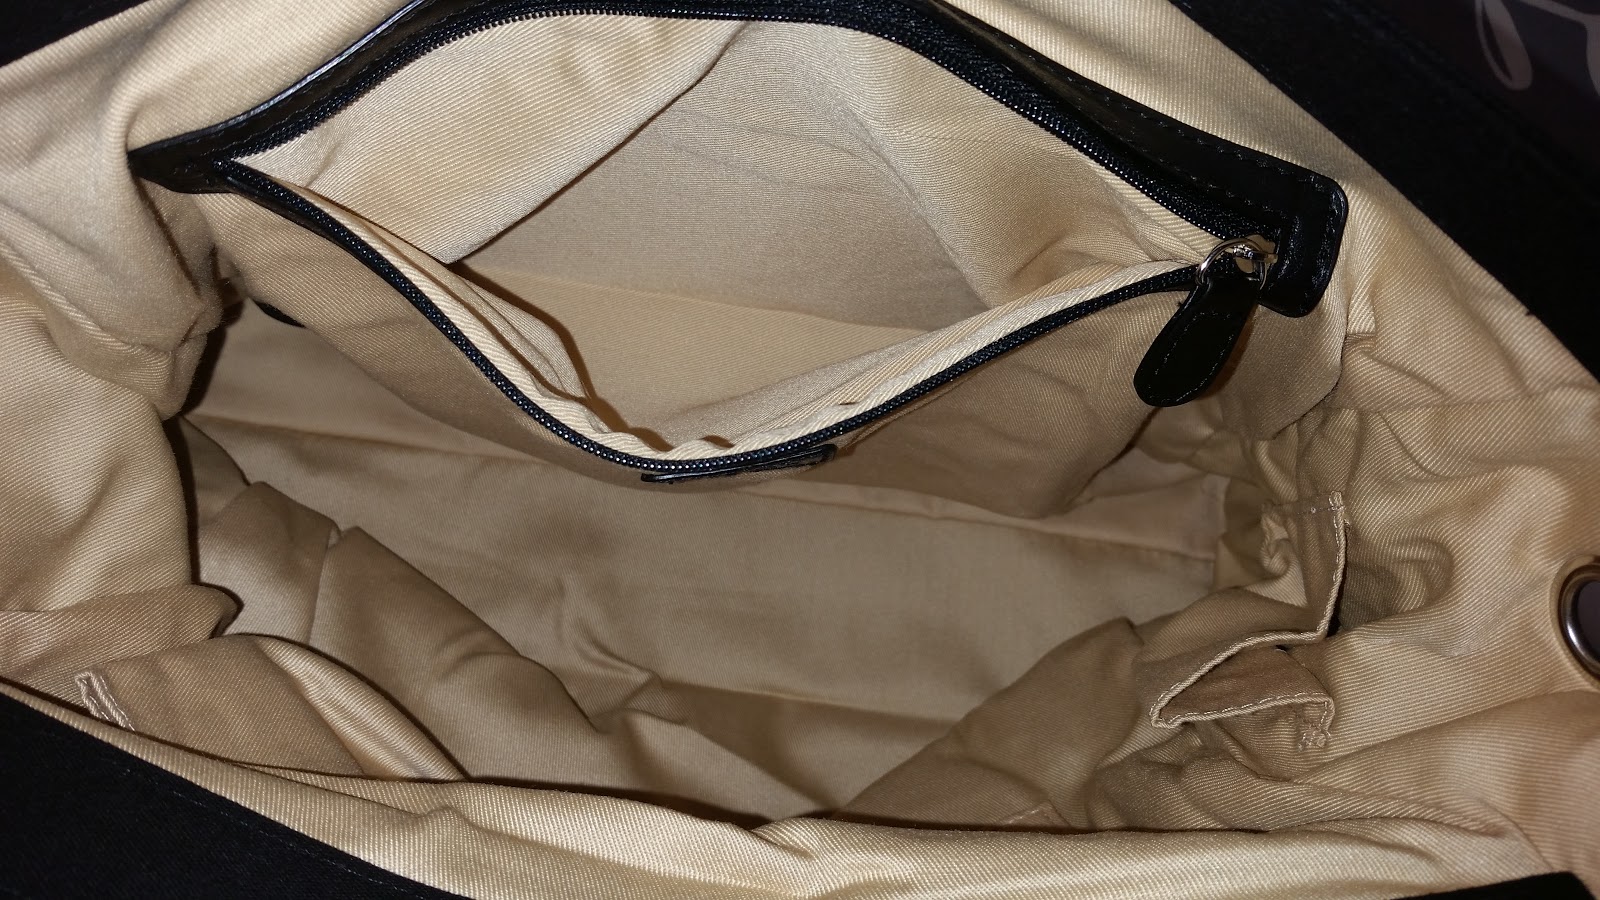 Miche Hampton Luxe Demi: Handbags